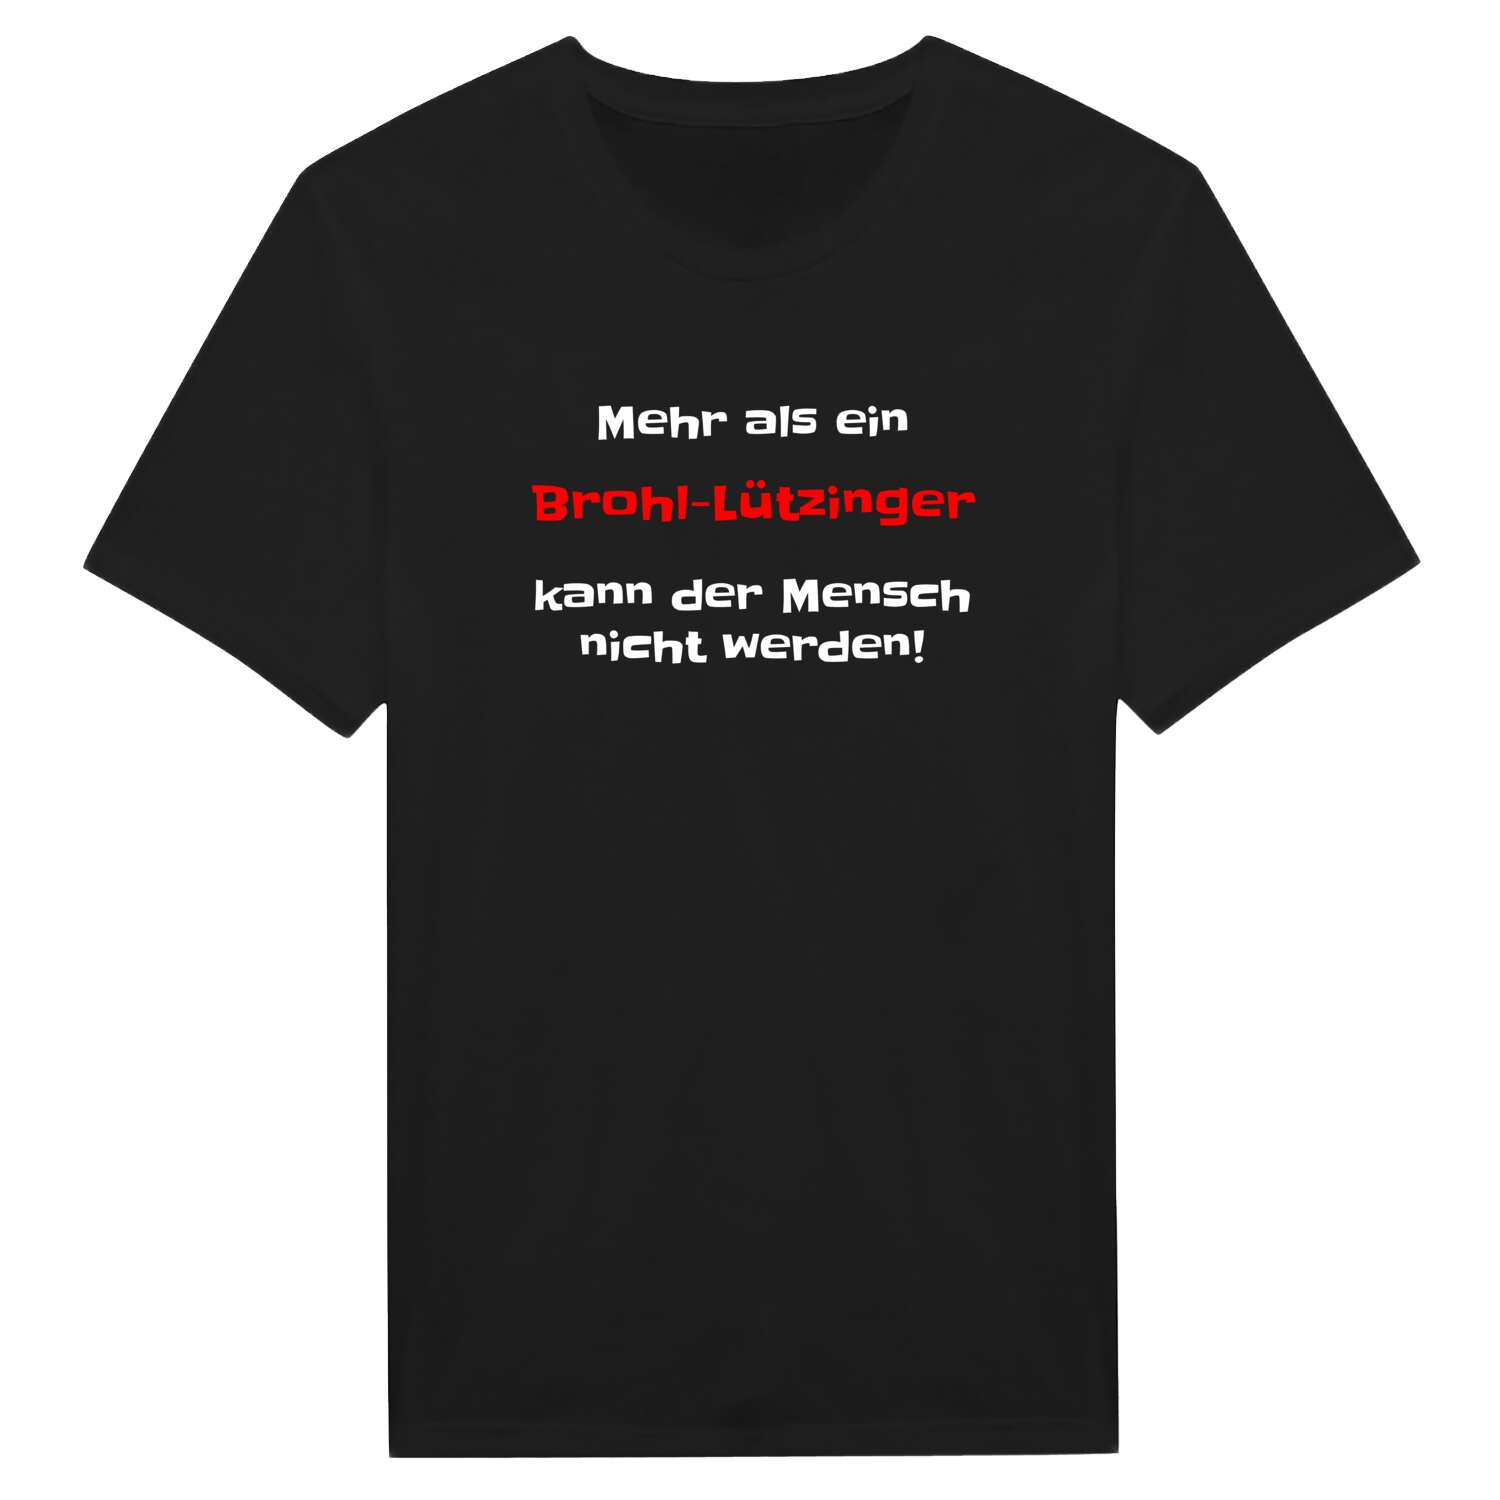 Brohl-Lützing T-Shirt »Mehr als ein«